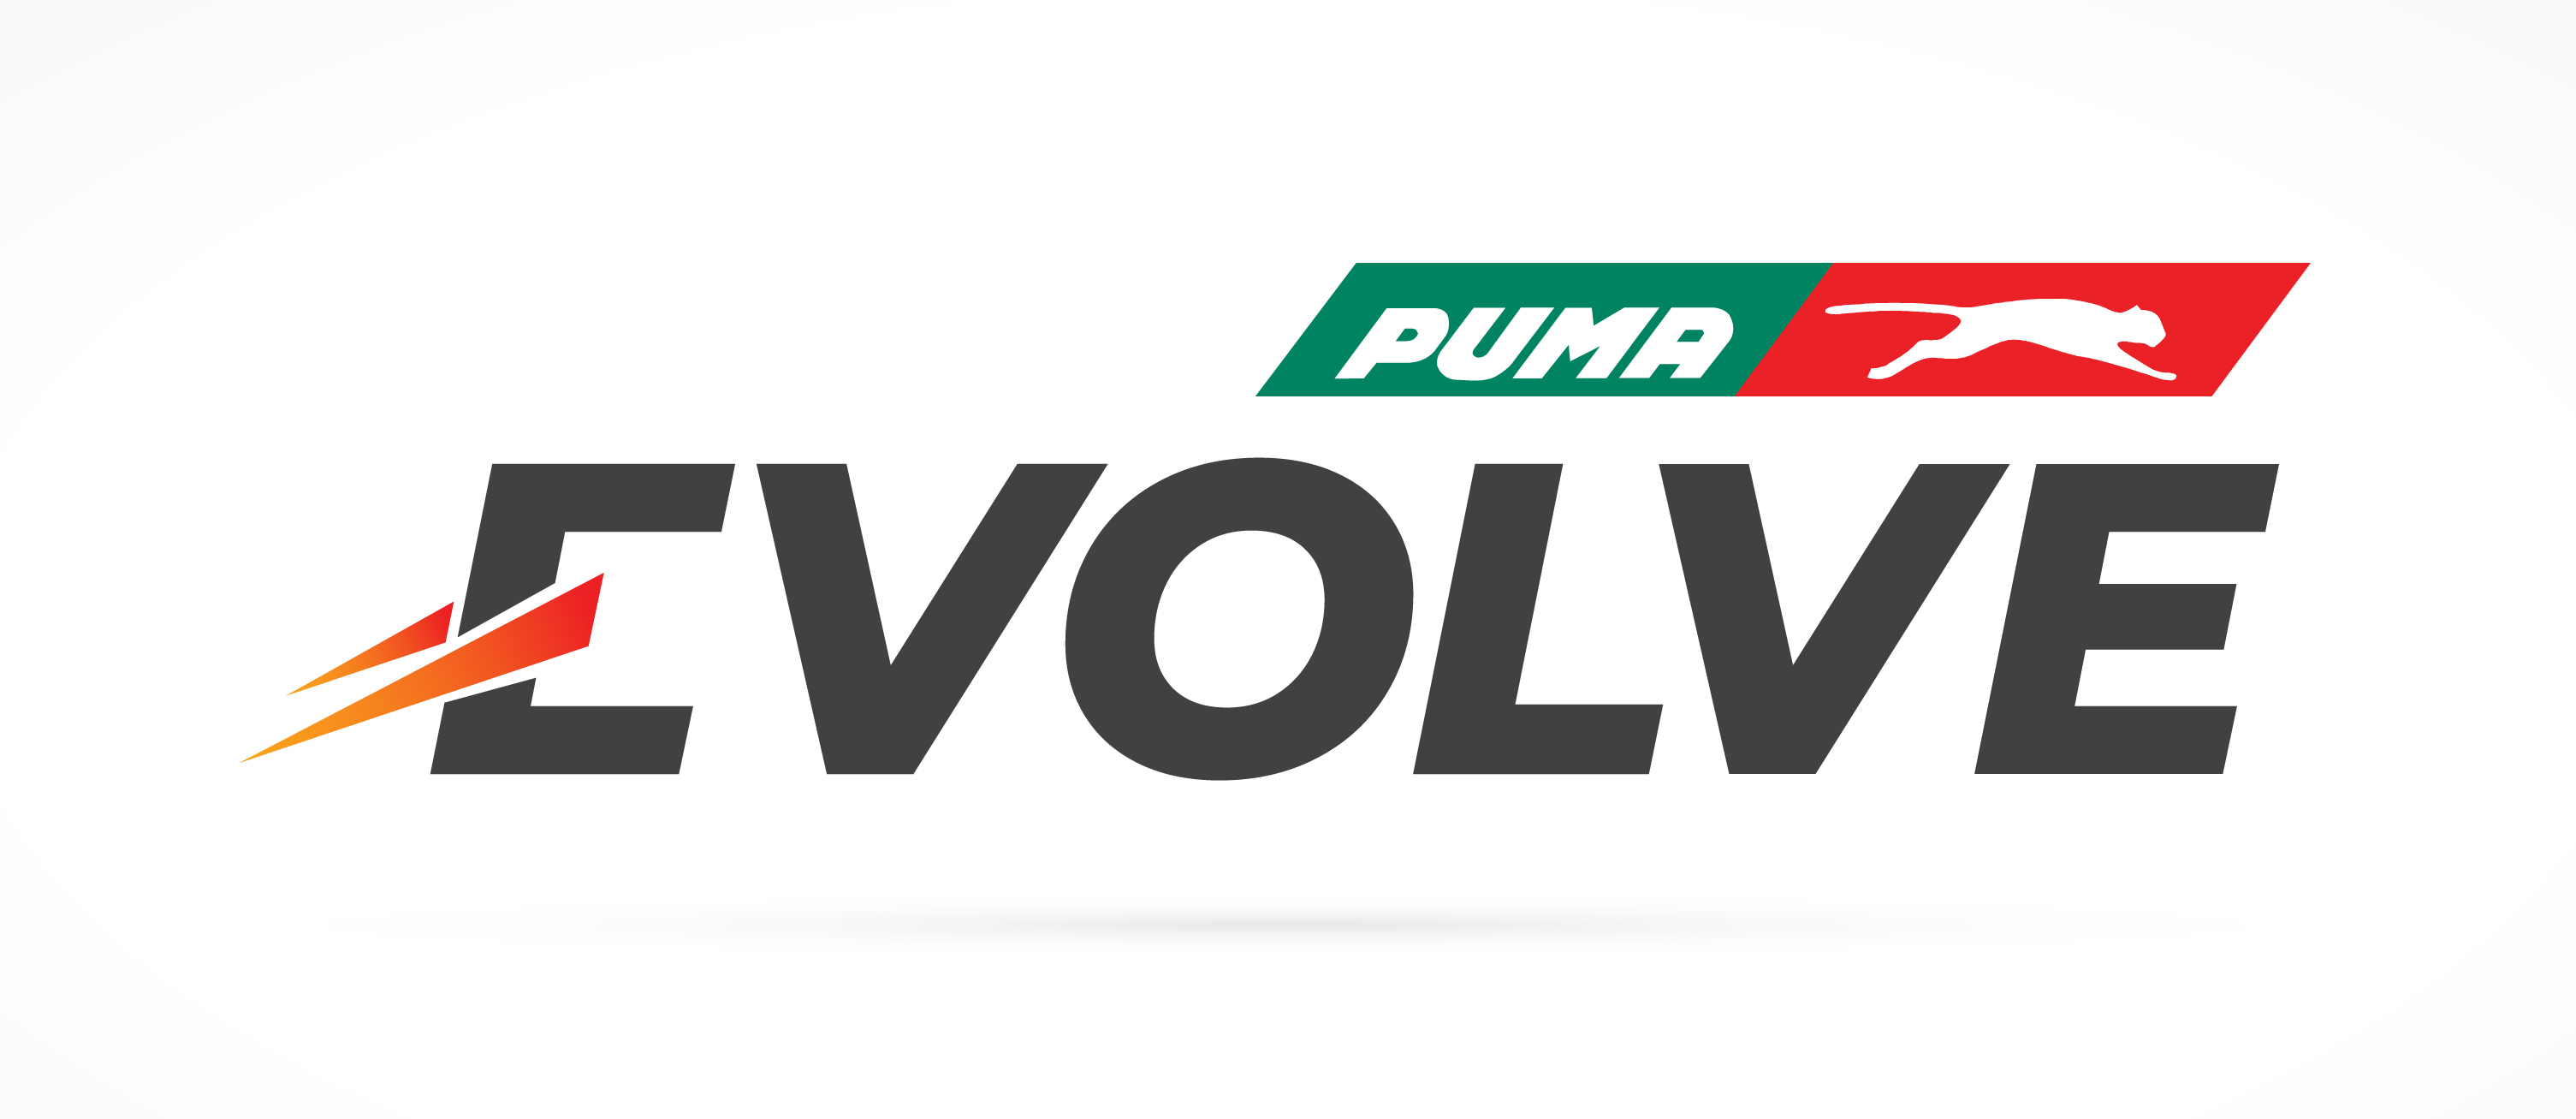 puma evolved gasoline